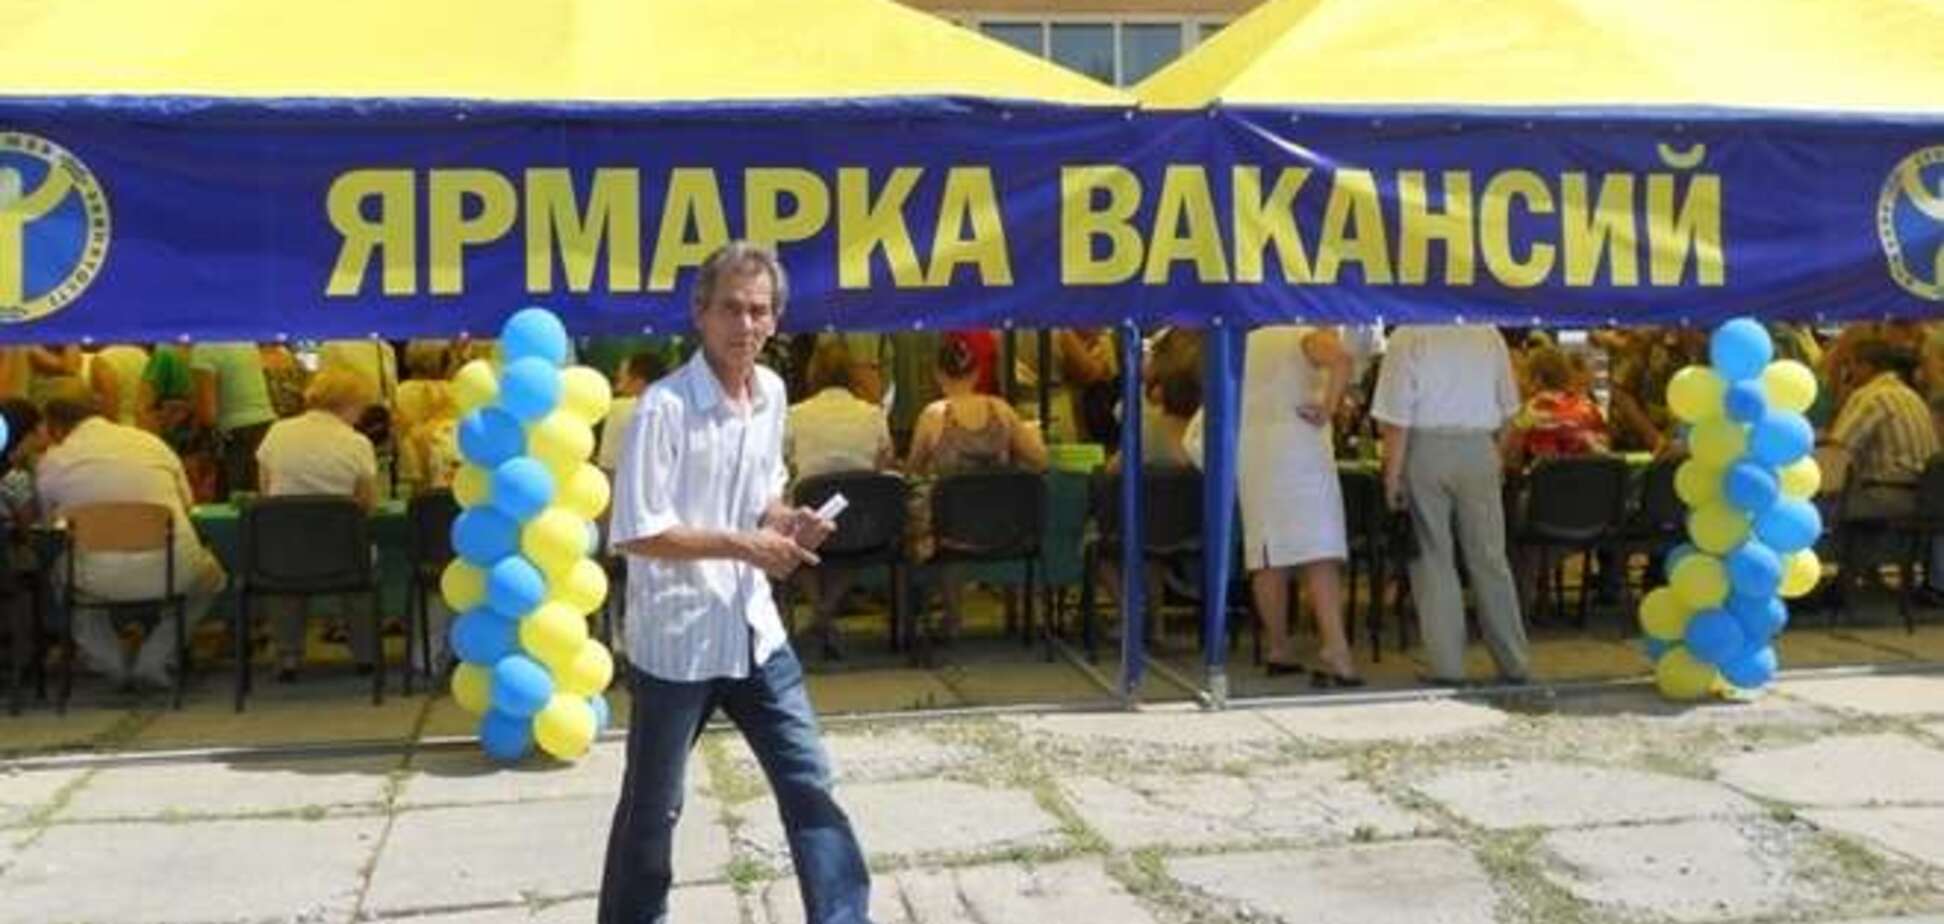 В Донецке появились экзотические вакансии: требуется даже разработчик аватаров